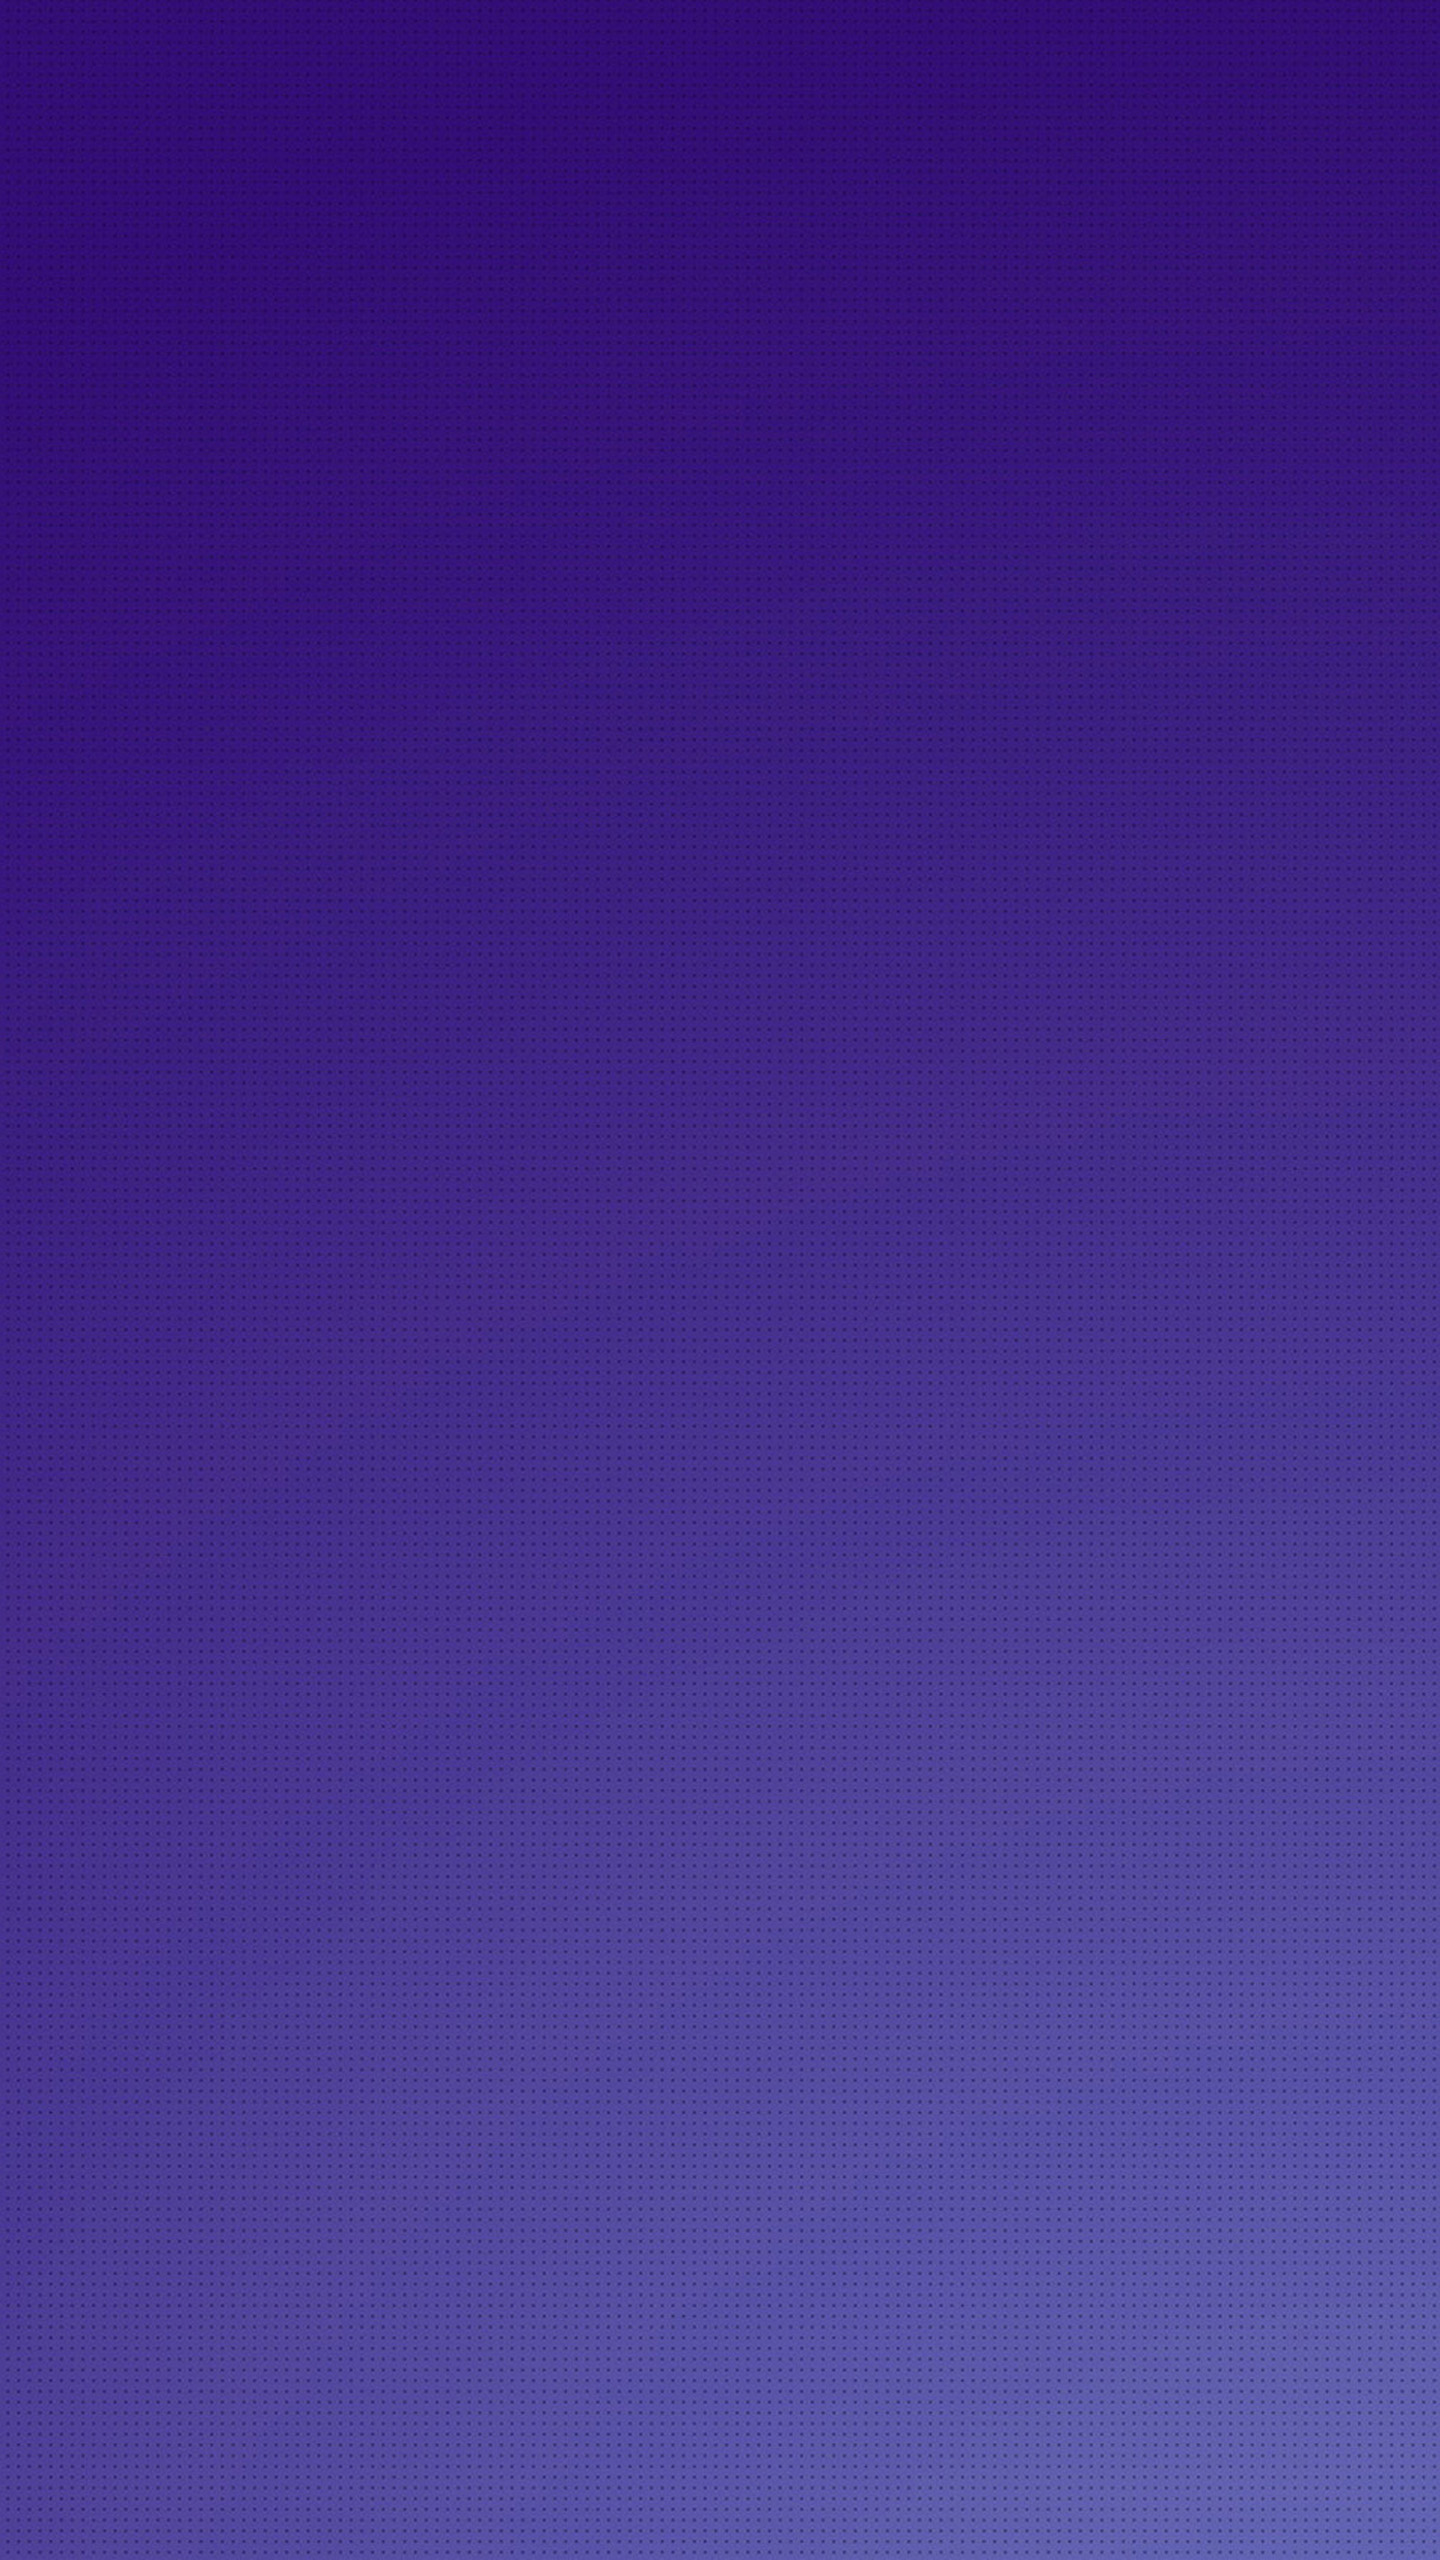 Purple little Galaxy S6 Wallpaper | Galaxy S6 Wallpapers